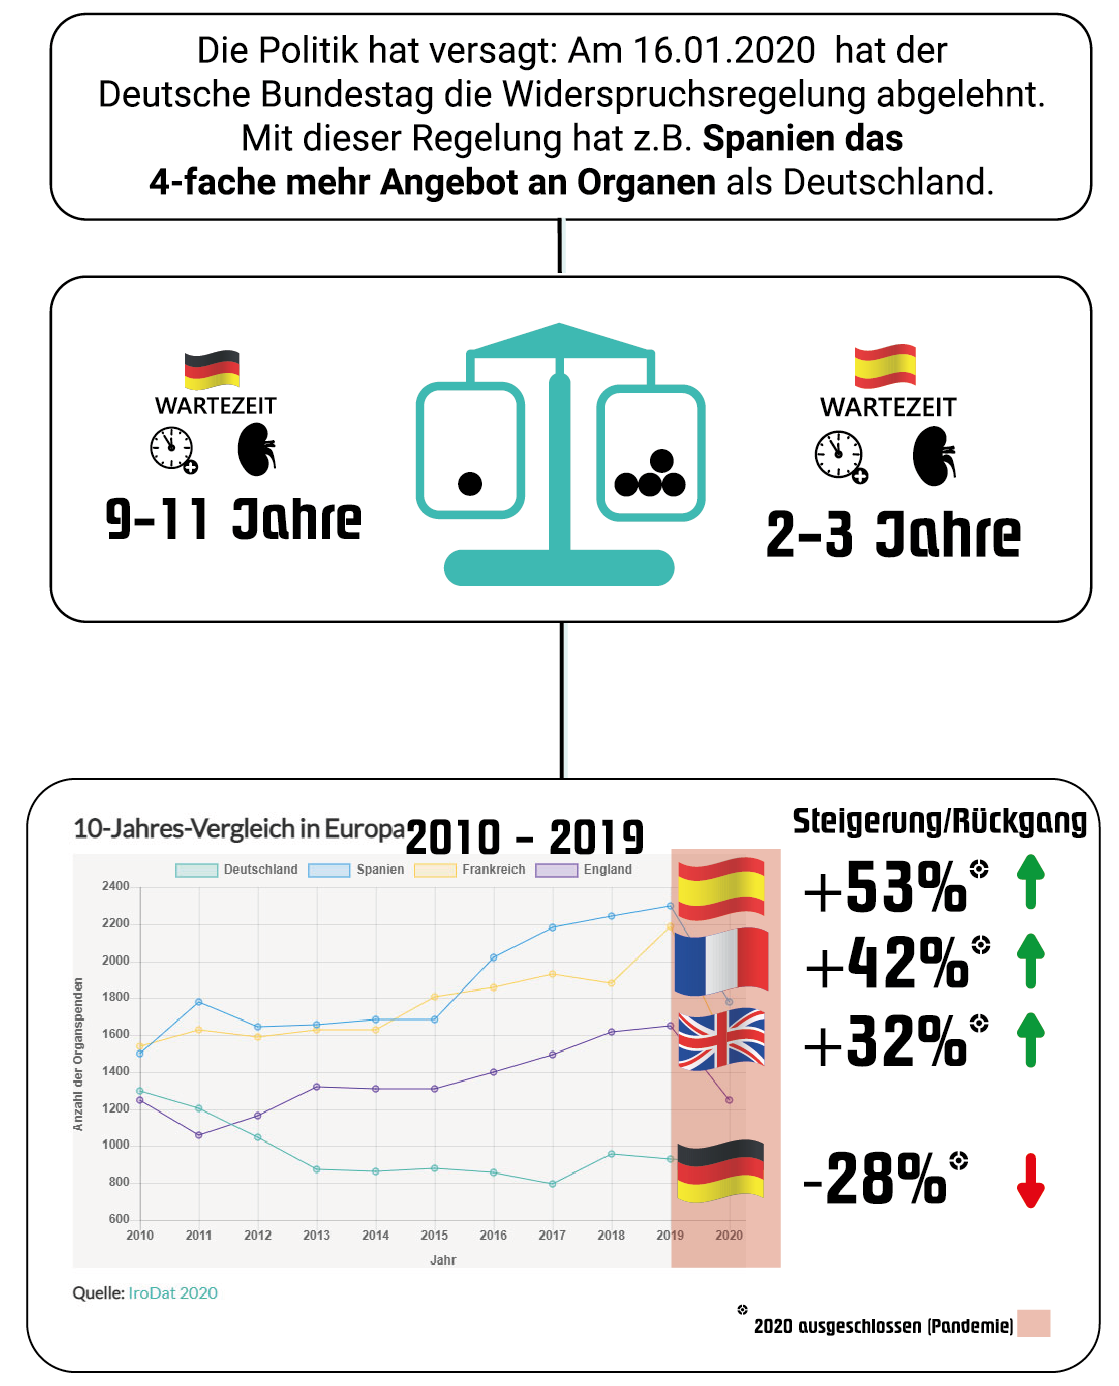 Die Politik hat versagt: Am 16.01.2020 hat der Deutsche Bundestag die Widerspruchsregelung abgelehnt. Mit dieser Regelung hat z.B. Spanien das 4-fache mehr Angebot an Organen als Deutschland.